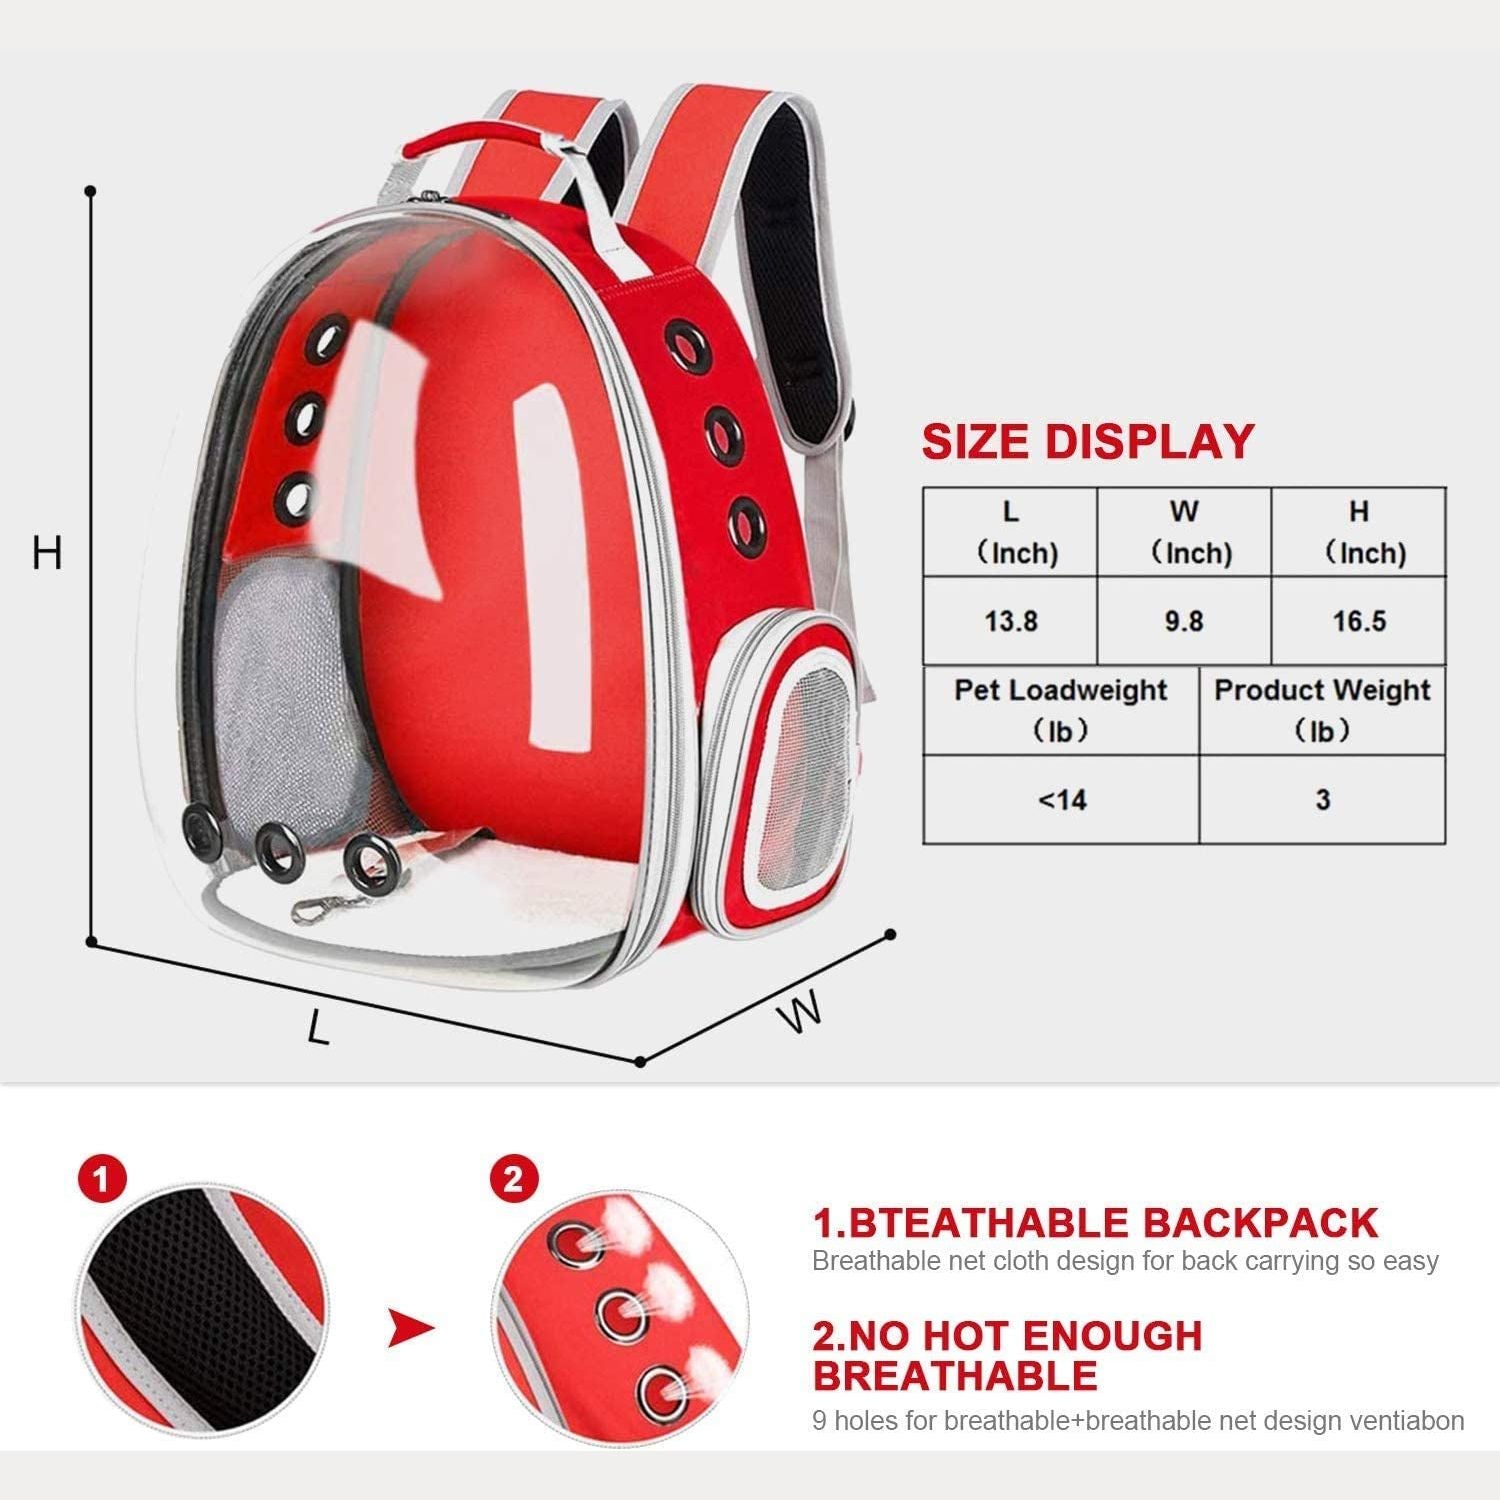 Space Capsule Backpack - Model 1 (Red)